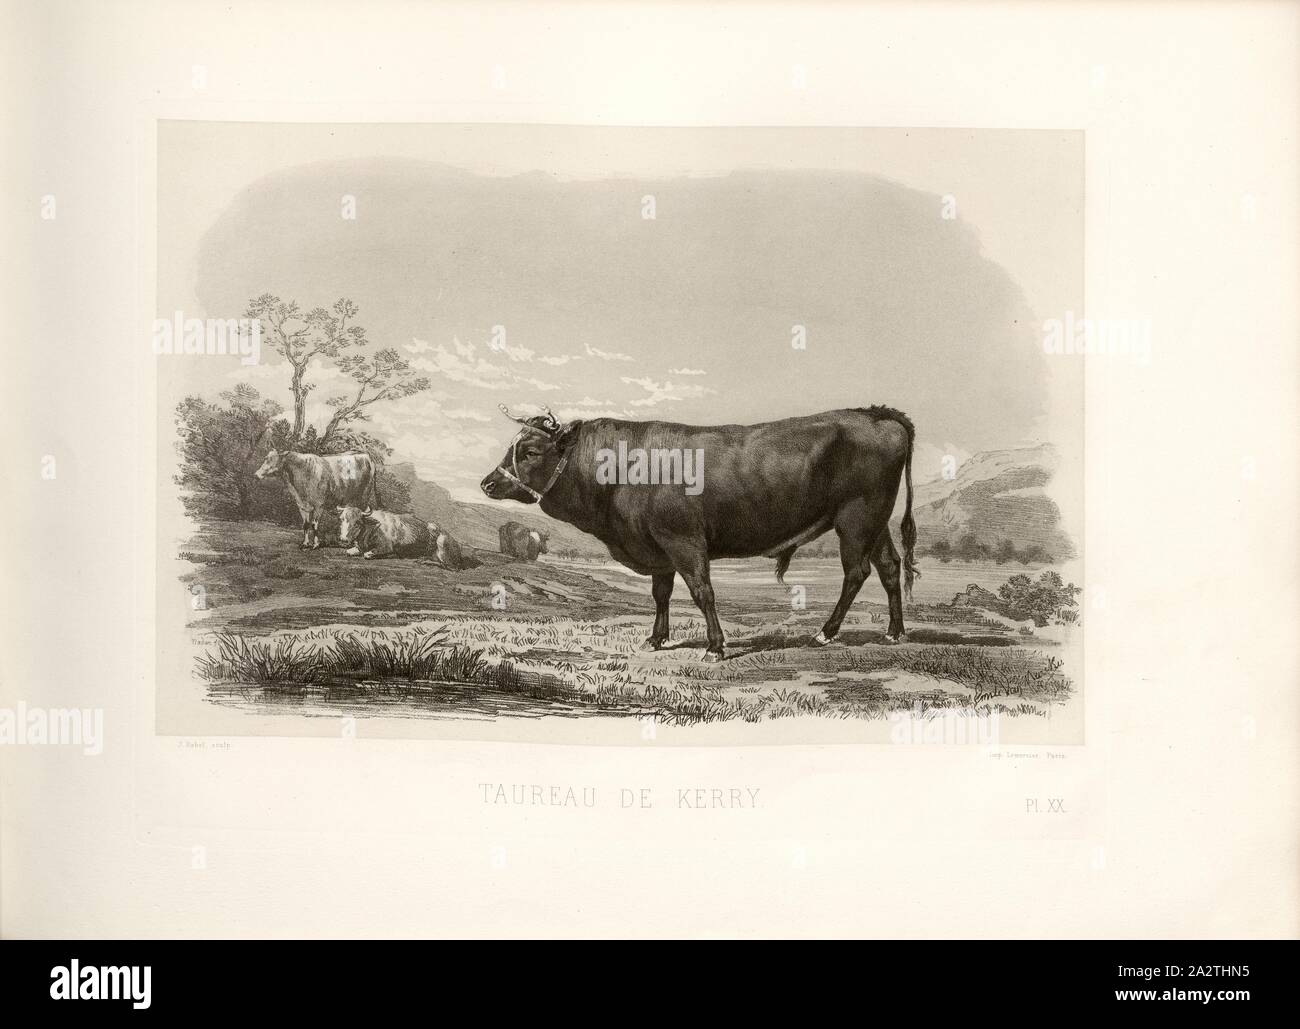 Kerry's Bull, British cattle breed, bull, signed: Phot., Nadar, Emile van Marcke; J. Rebel sculp, Pl. XX, p. 51, Tournachon, Adrien Alban (Phot.); Marcke, Emile van; Rebel, J. (sc.), Emile Baudement: Les races bovines au concours universel agricole de Paris en 1856: études zootechniques. Bd. 2. Paris: Imprimerie Impériale, MDCCCLXI [1861 Stock Photo